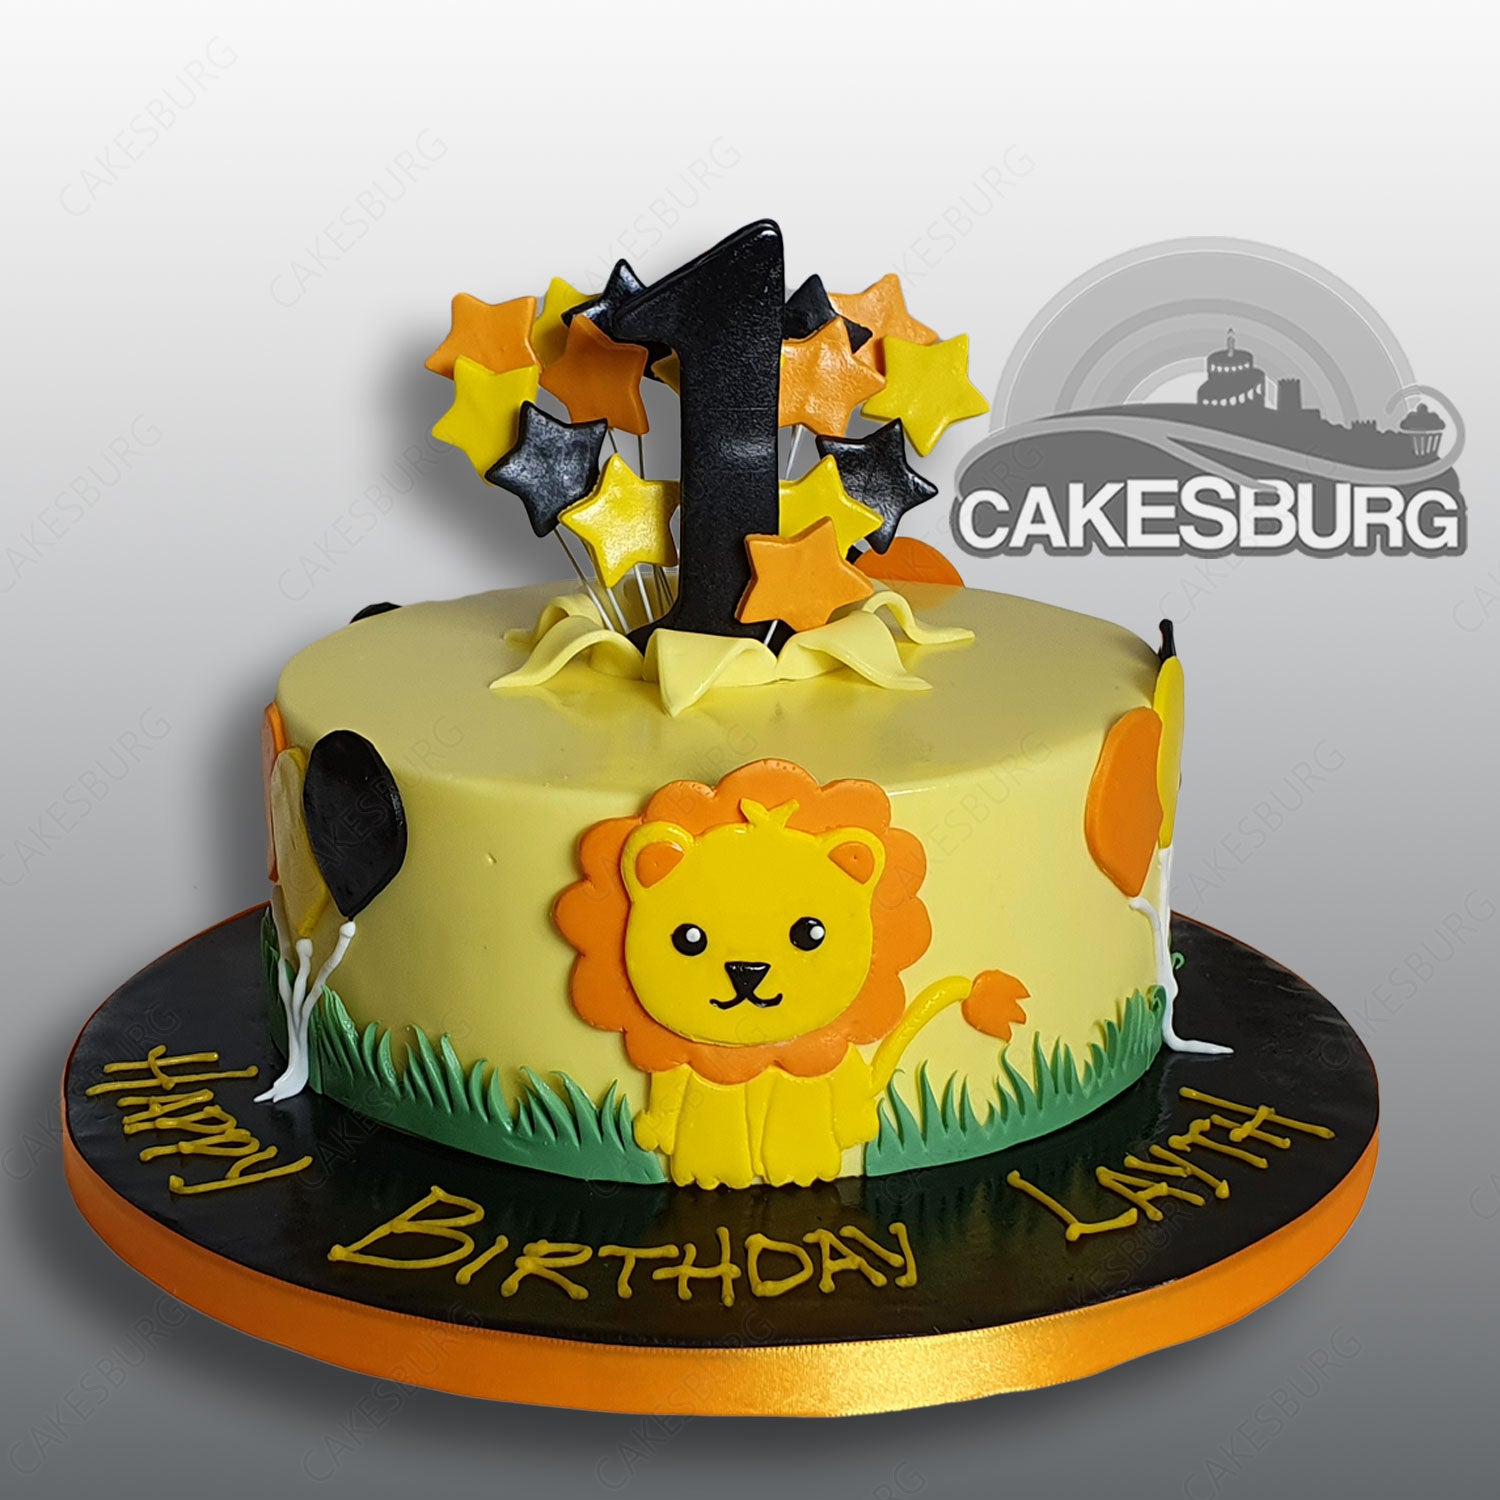 Lion King Theme Cakes 68 - Cake Square Chennai | Cake Shop in Chennai